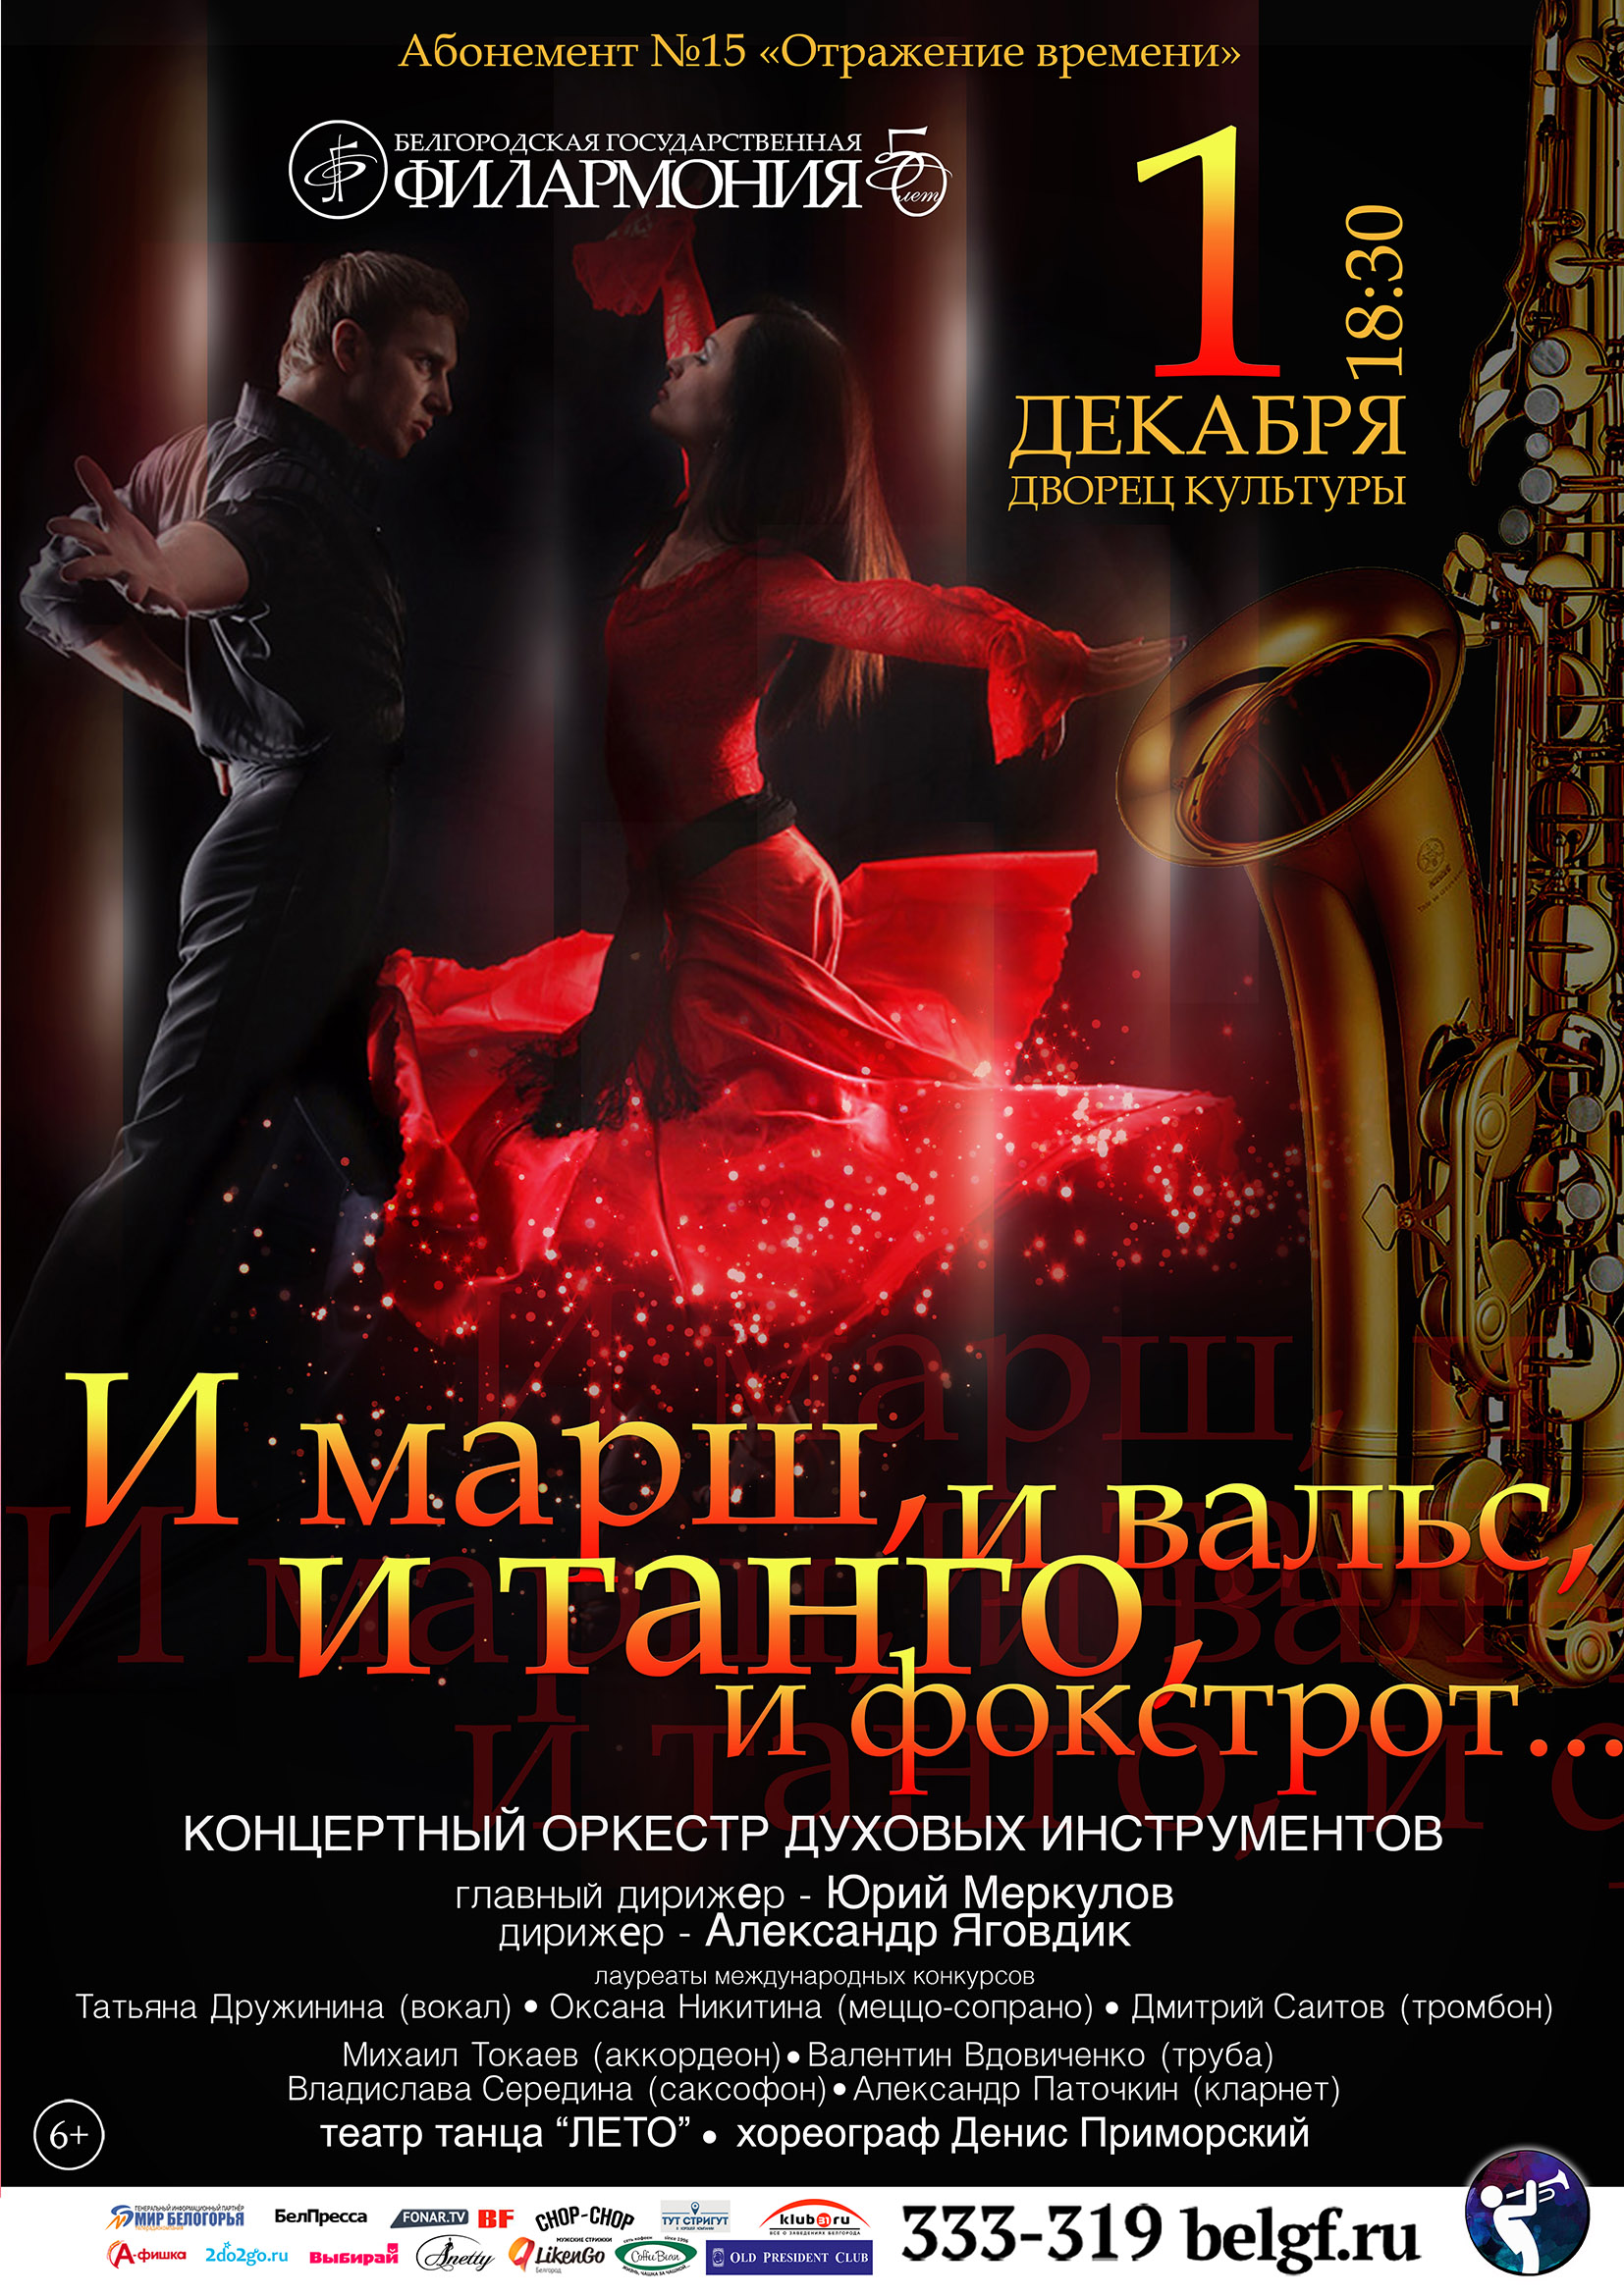 Концерт духового оркестра Белгородской филармонии «И марш, и вальс, и танго, и фокстрот…»